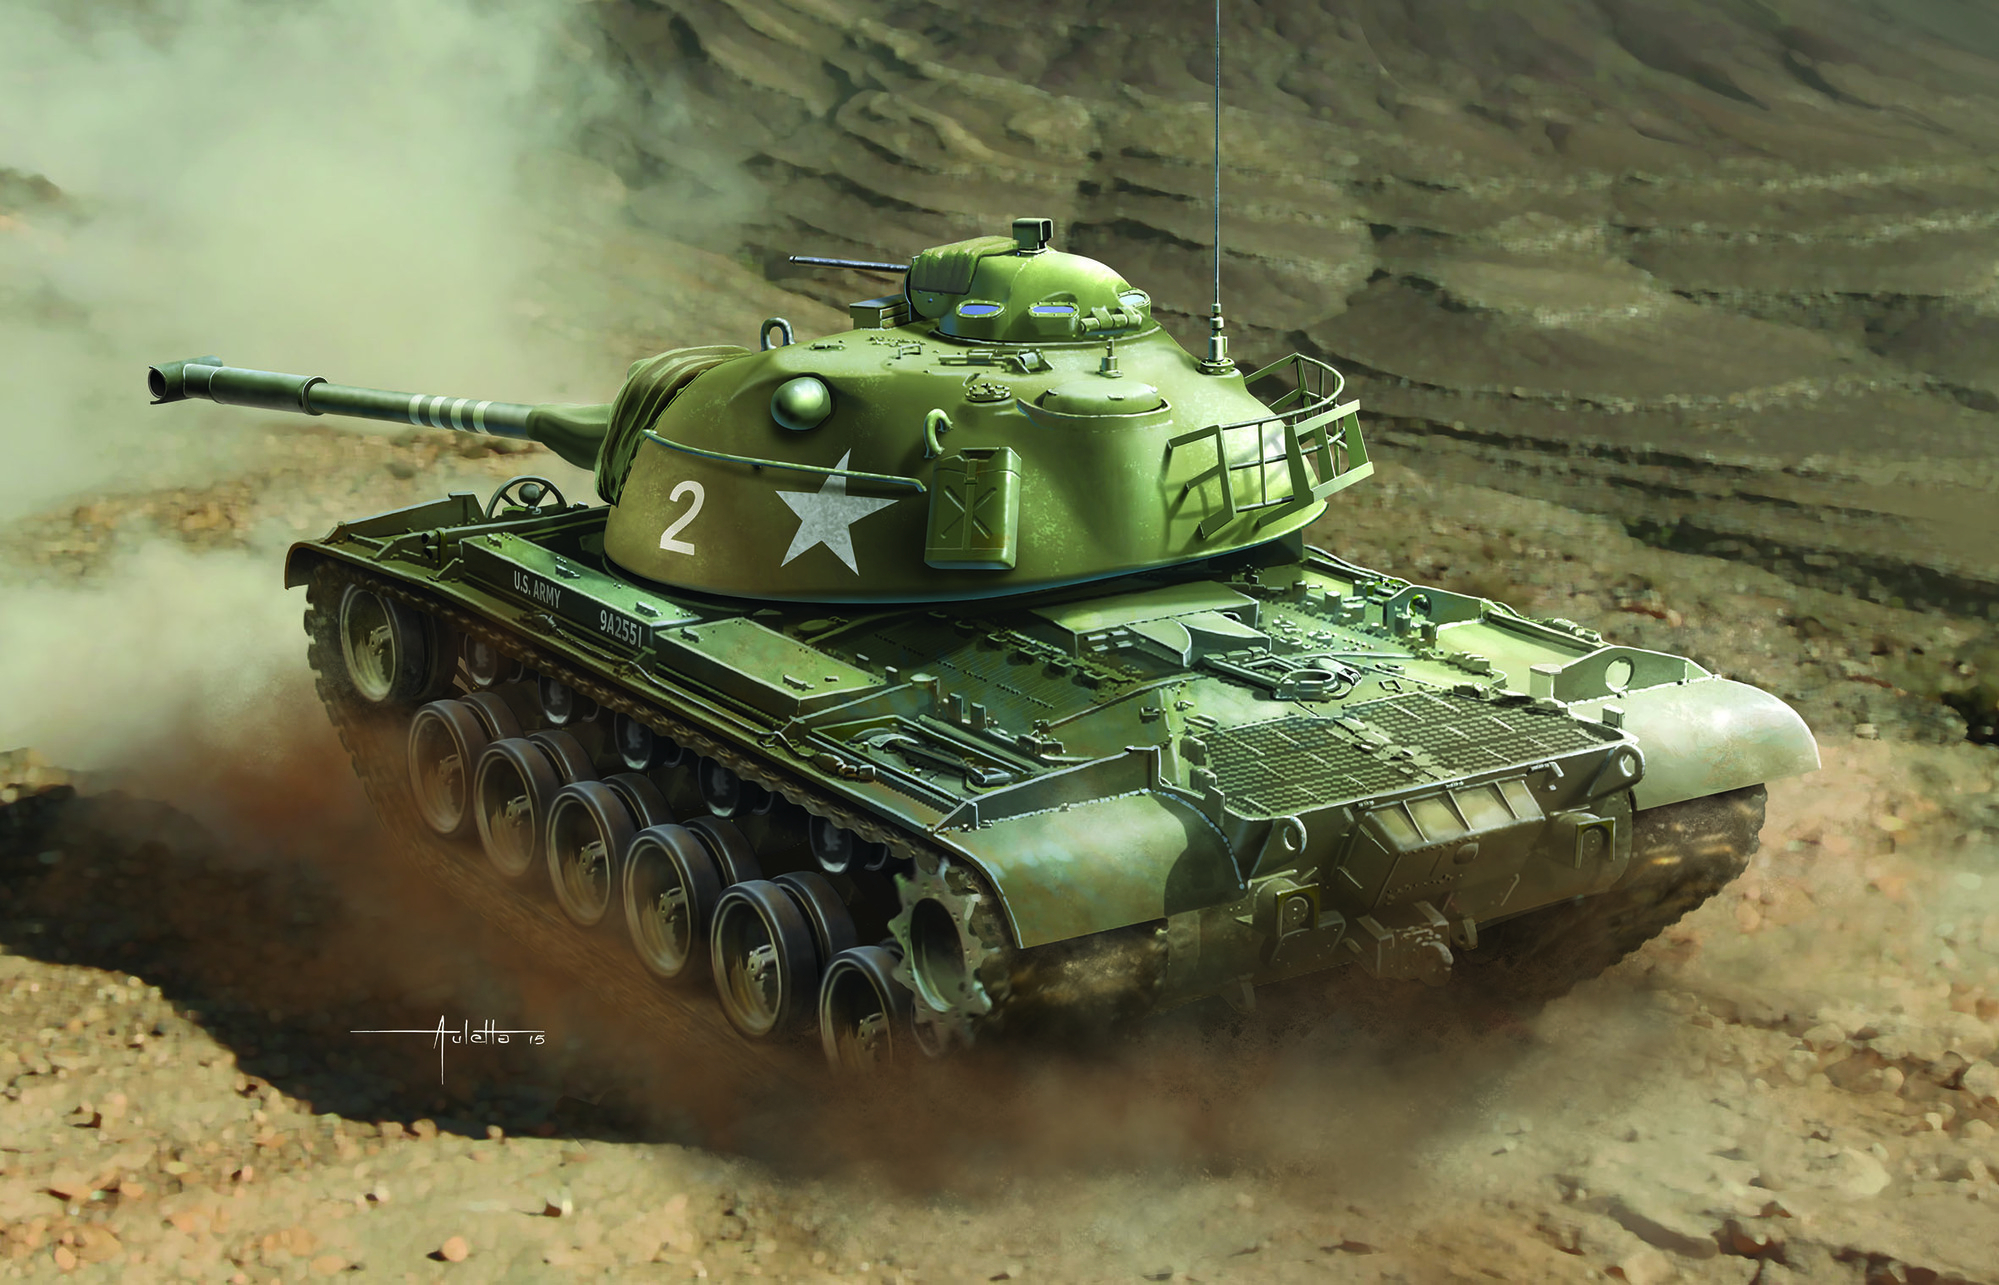 Stavebnica tanku 3559 - M48A1 (SMART KIT) (1:35)